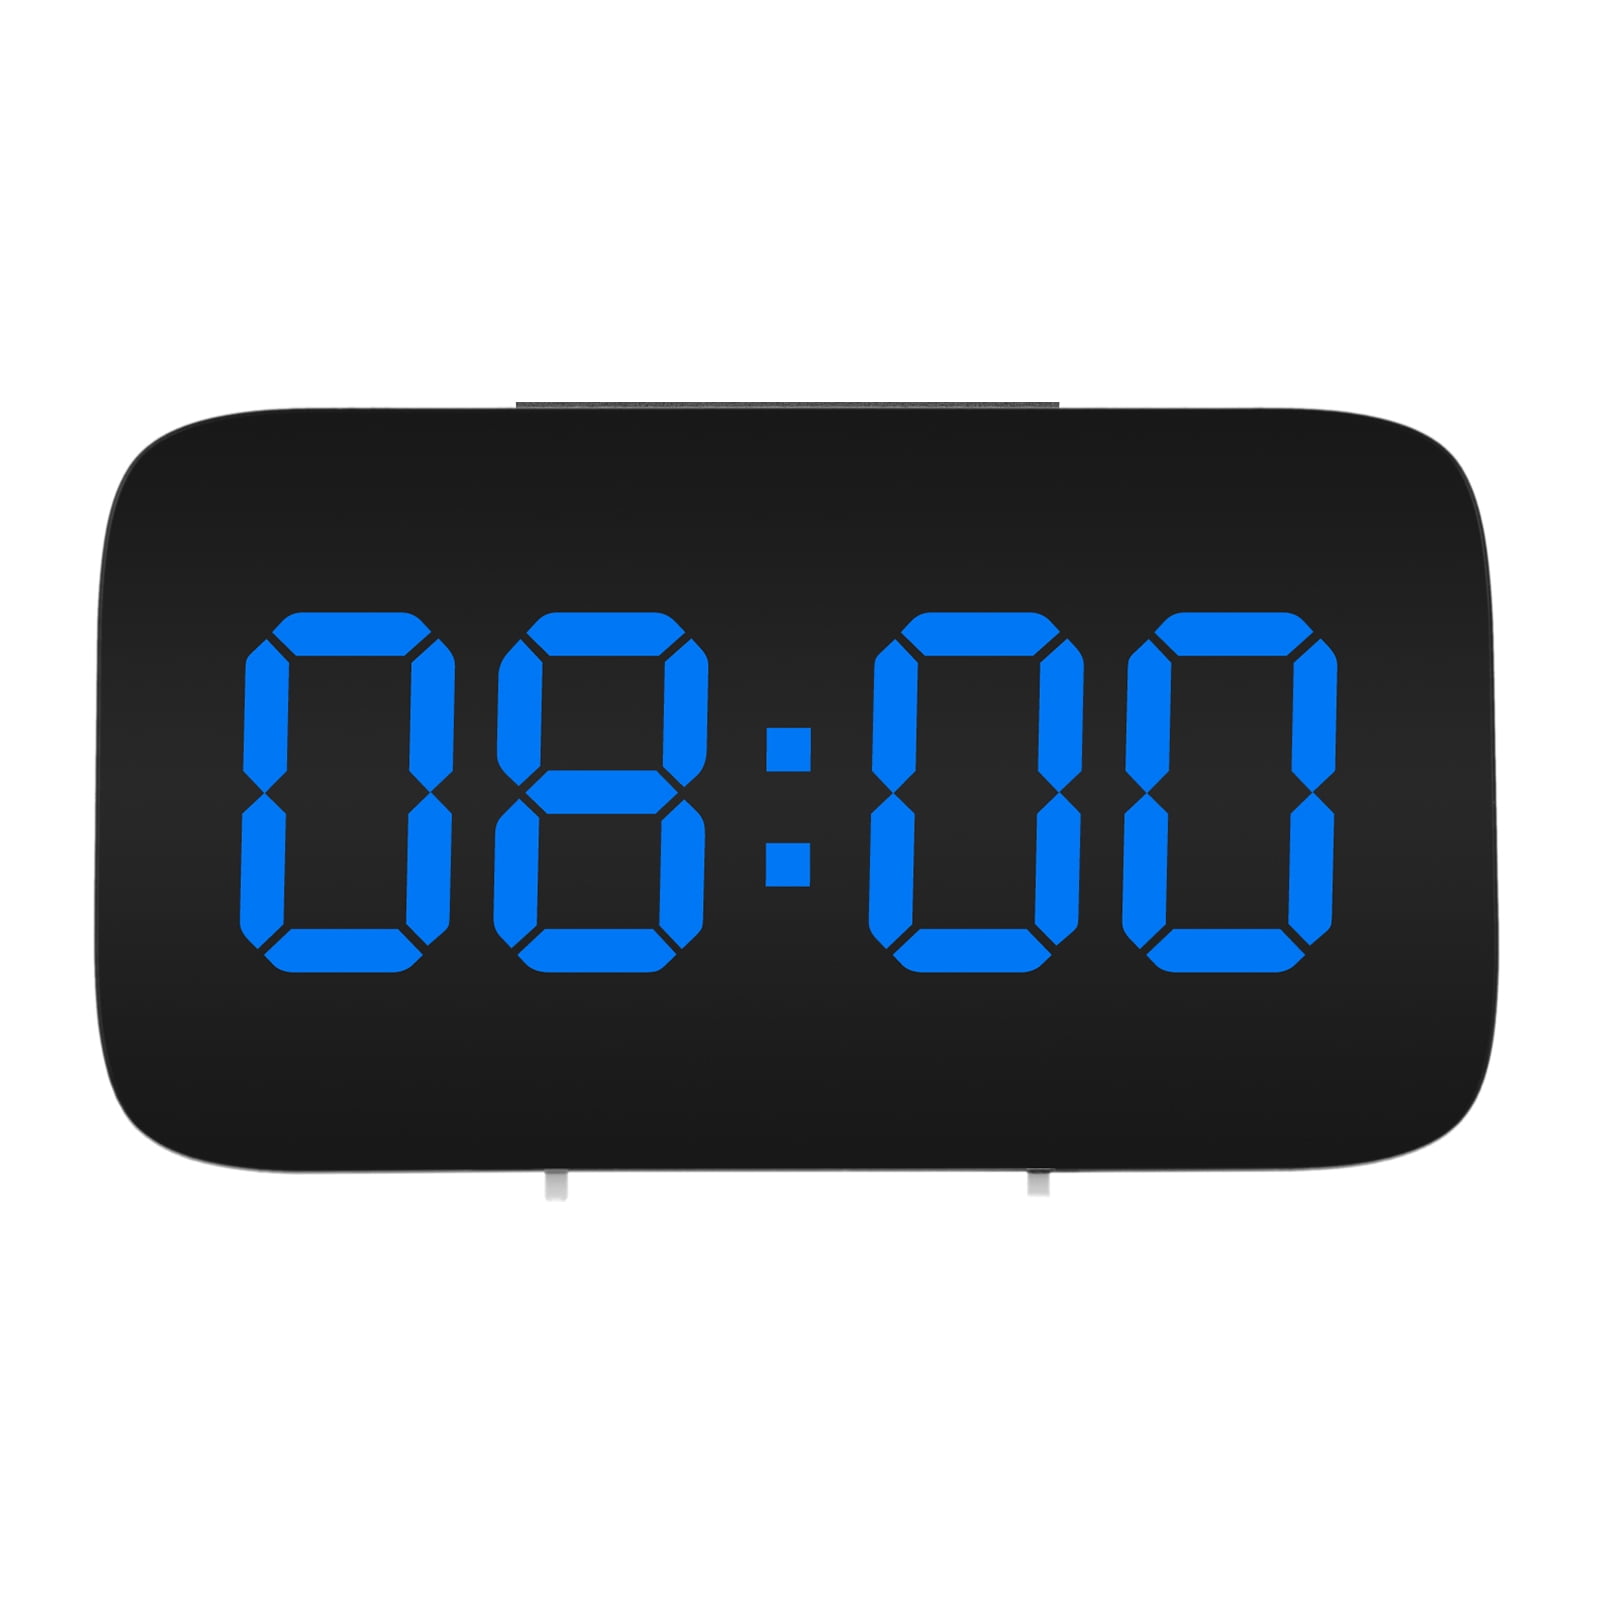 LED Alarm Clocks, EEEKit 3.5